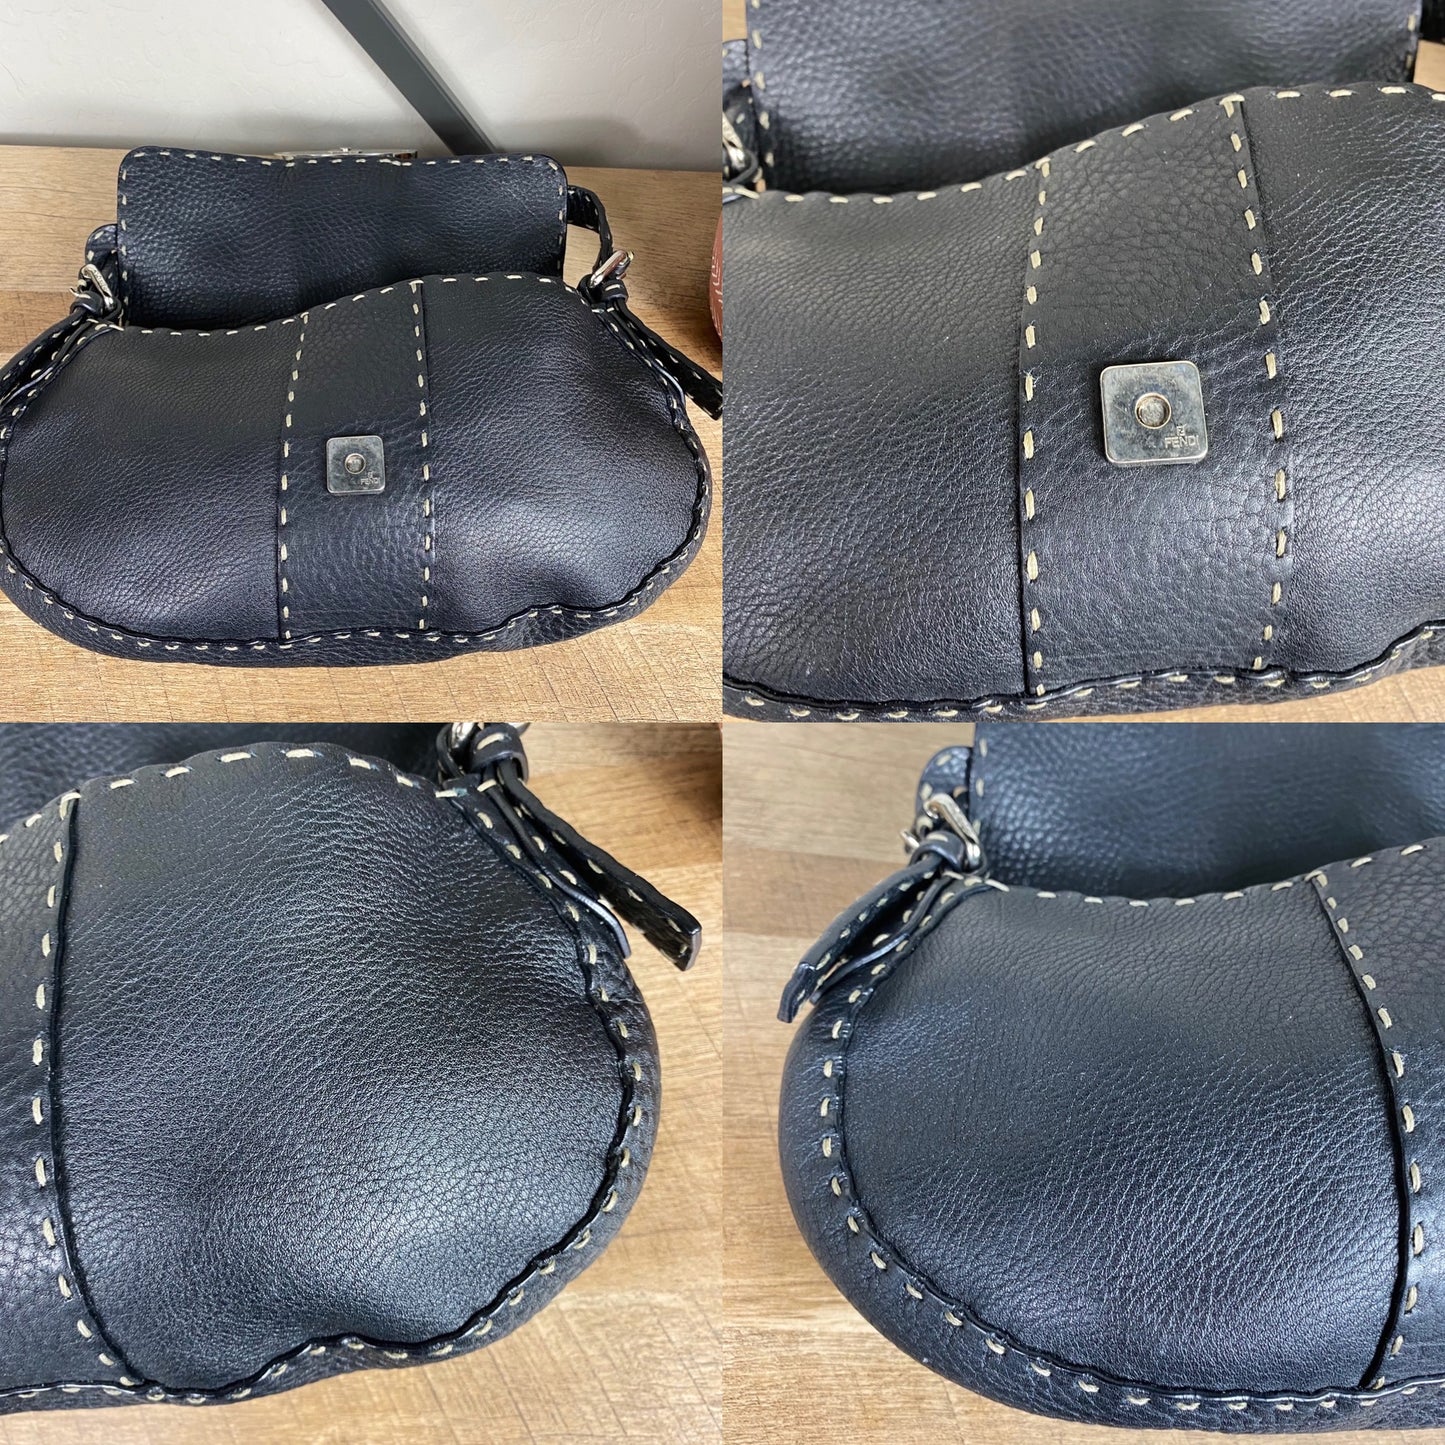 Fendi Selleria Leather Baguette Shoulder Bag